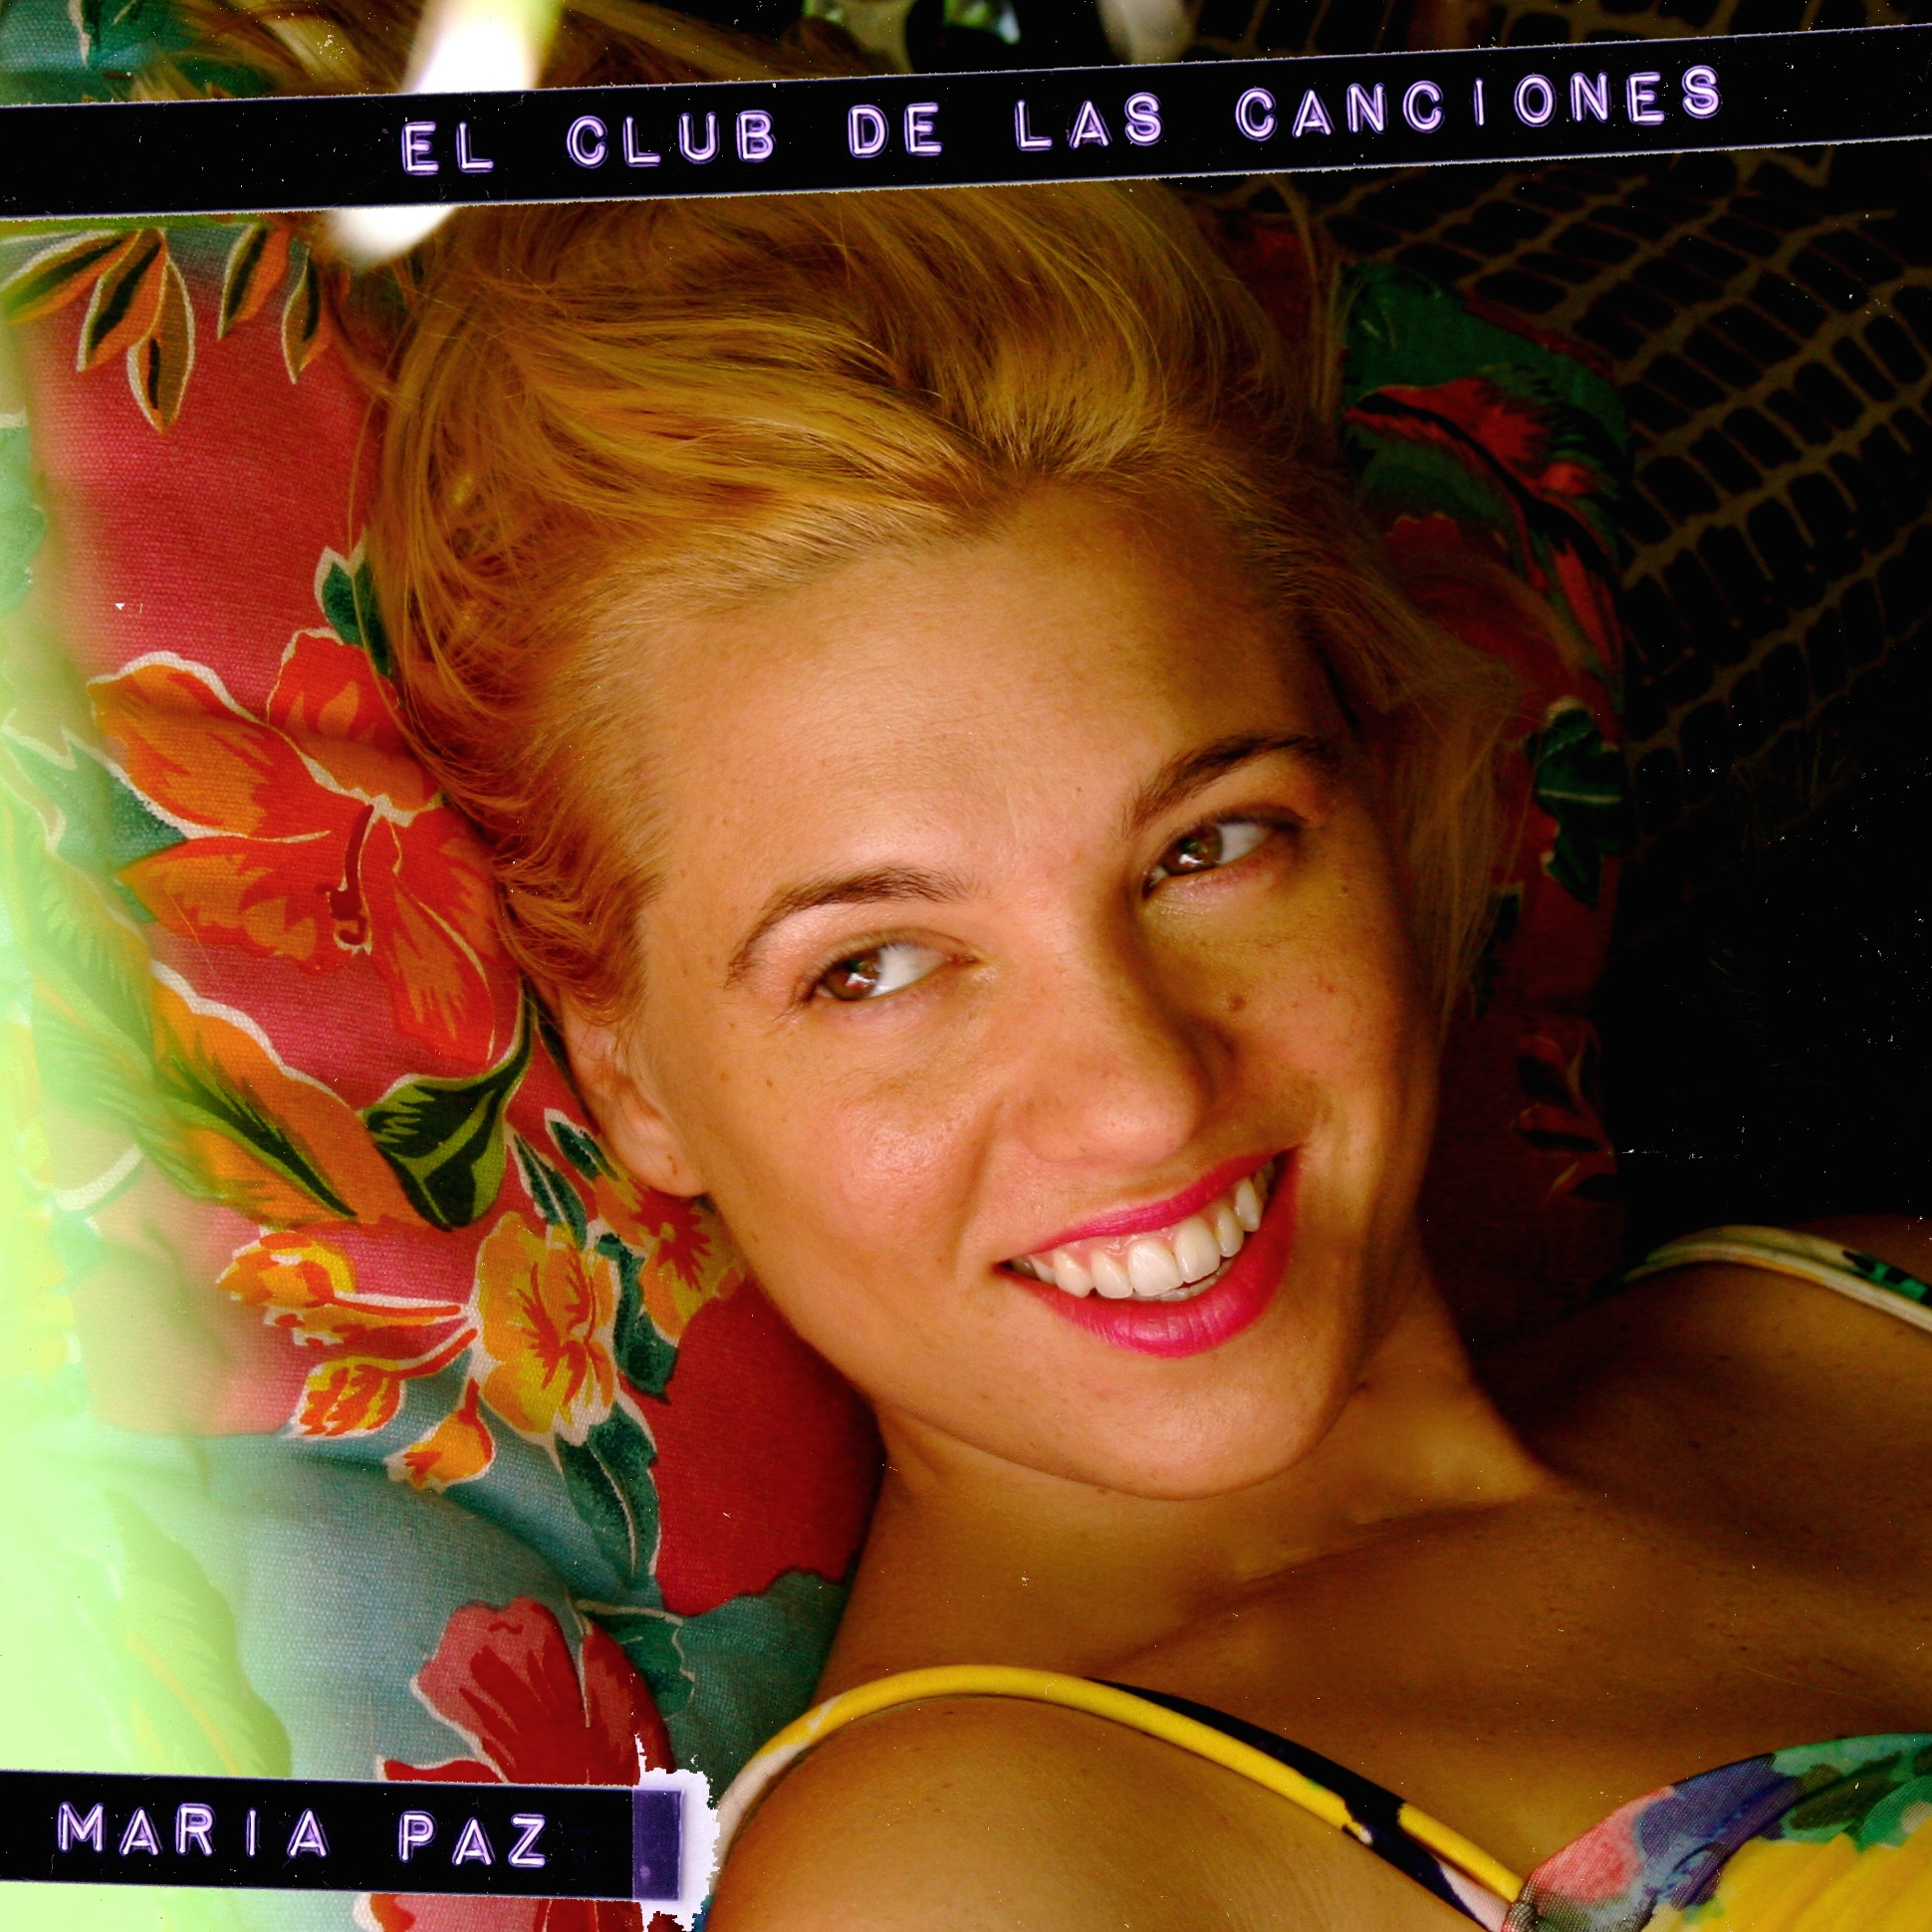 Maria Paz - El Club de las Canciones - Modulo Records Uruguay